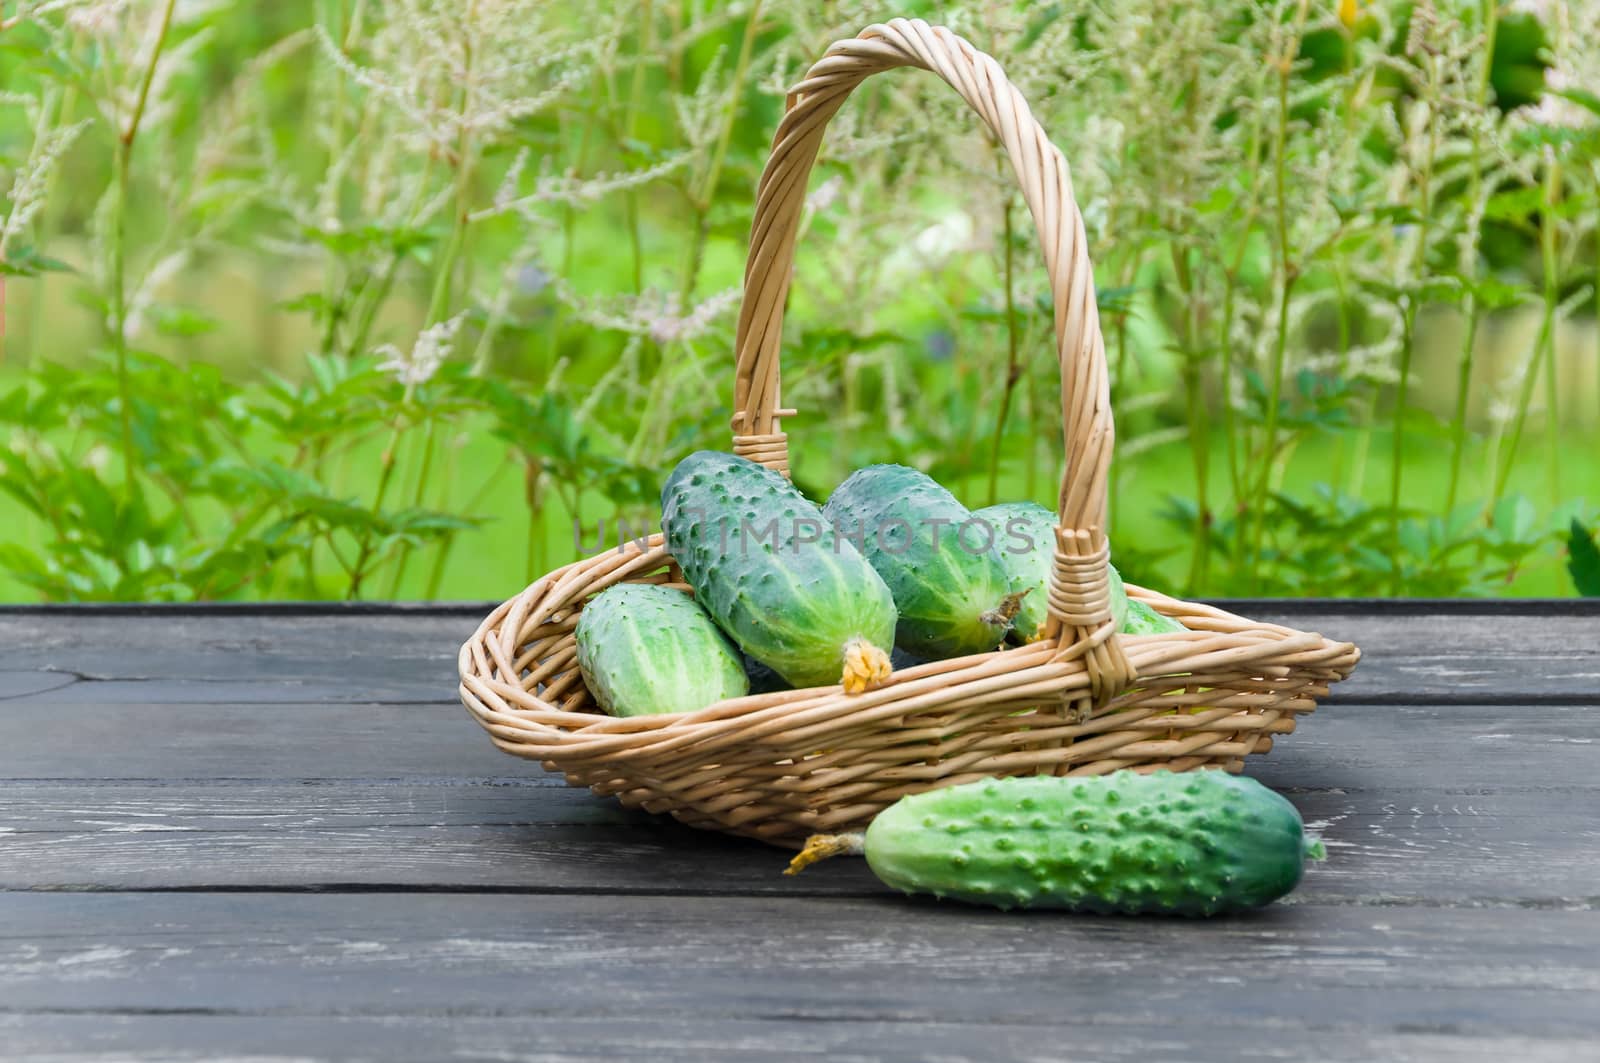 Cucumbers in a basket by zeffss